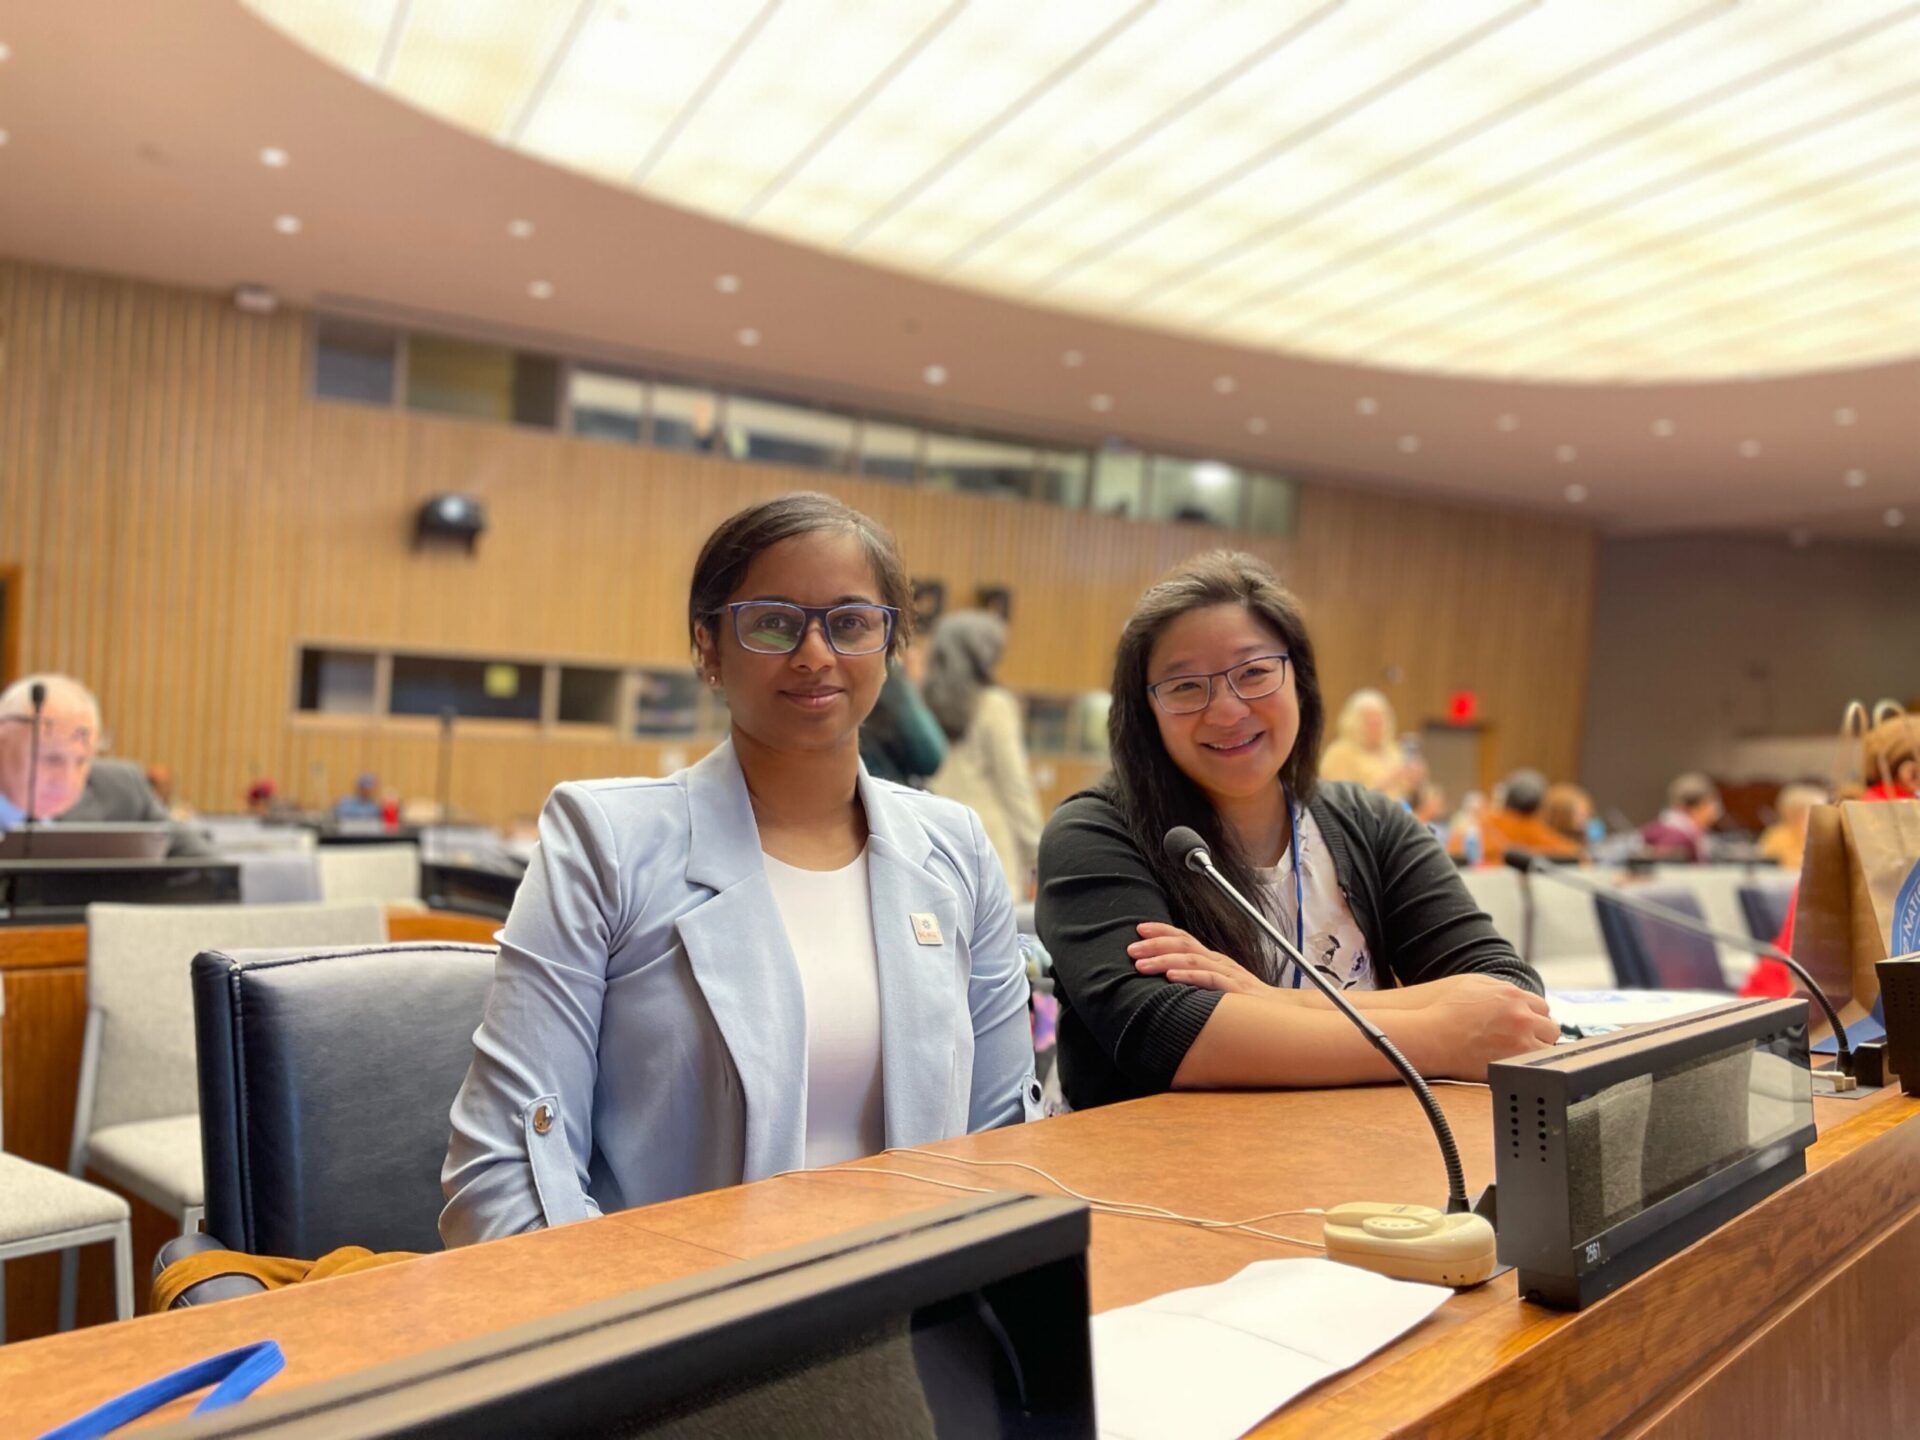 الدكتورة ميلاني راتنام والدكتور بوه تان في مقر الأمم المتحدة في نيويورك من أجل CSW67.